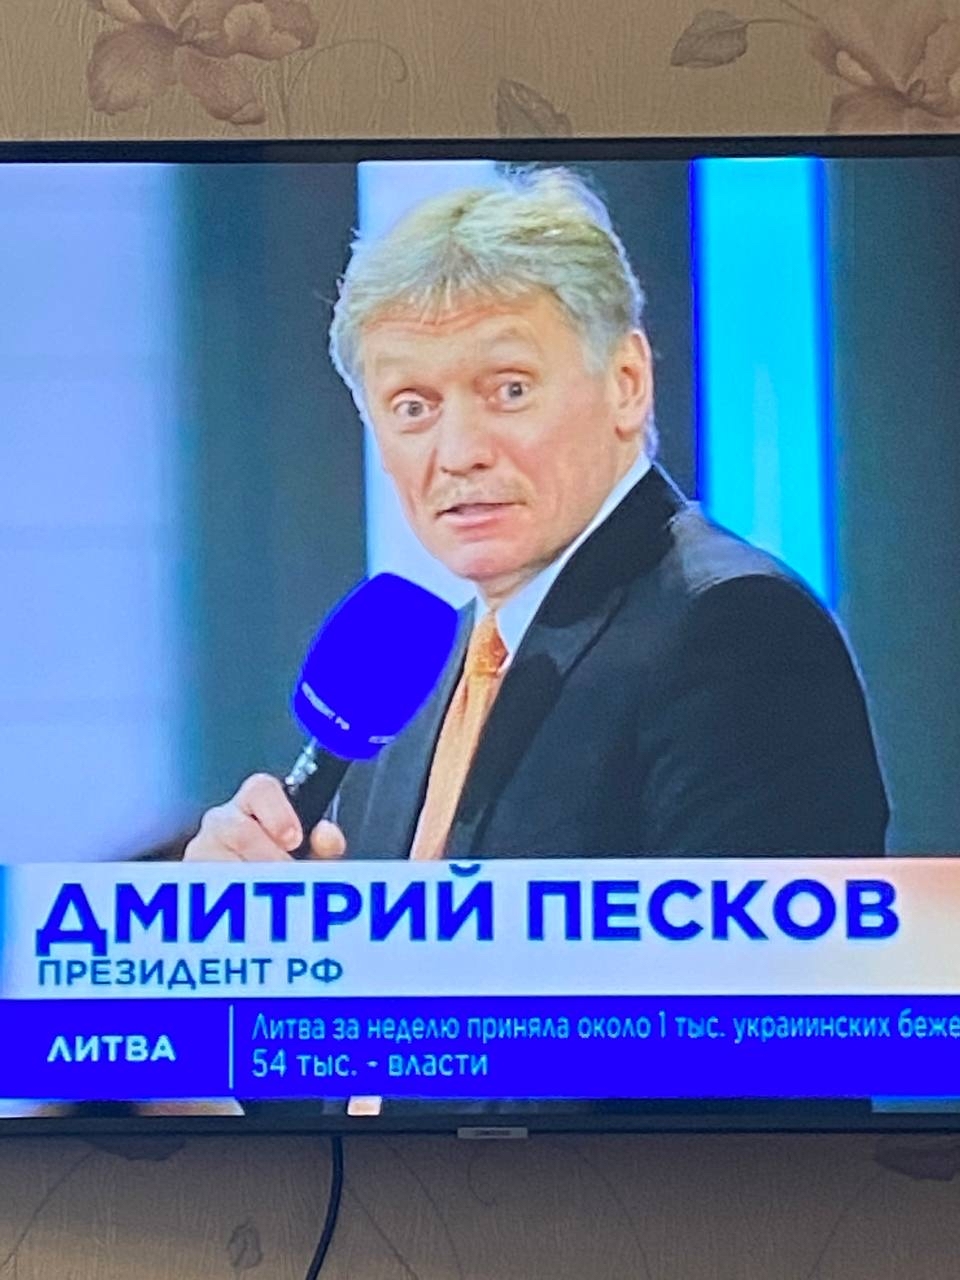 Yes, I'm shocked - Russia, The television, Dmitry Peskov, The president, Error, Typo